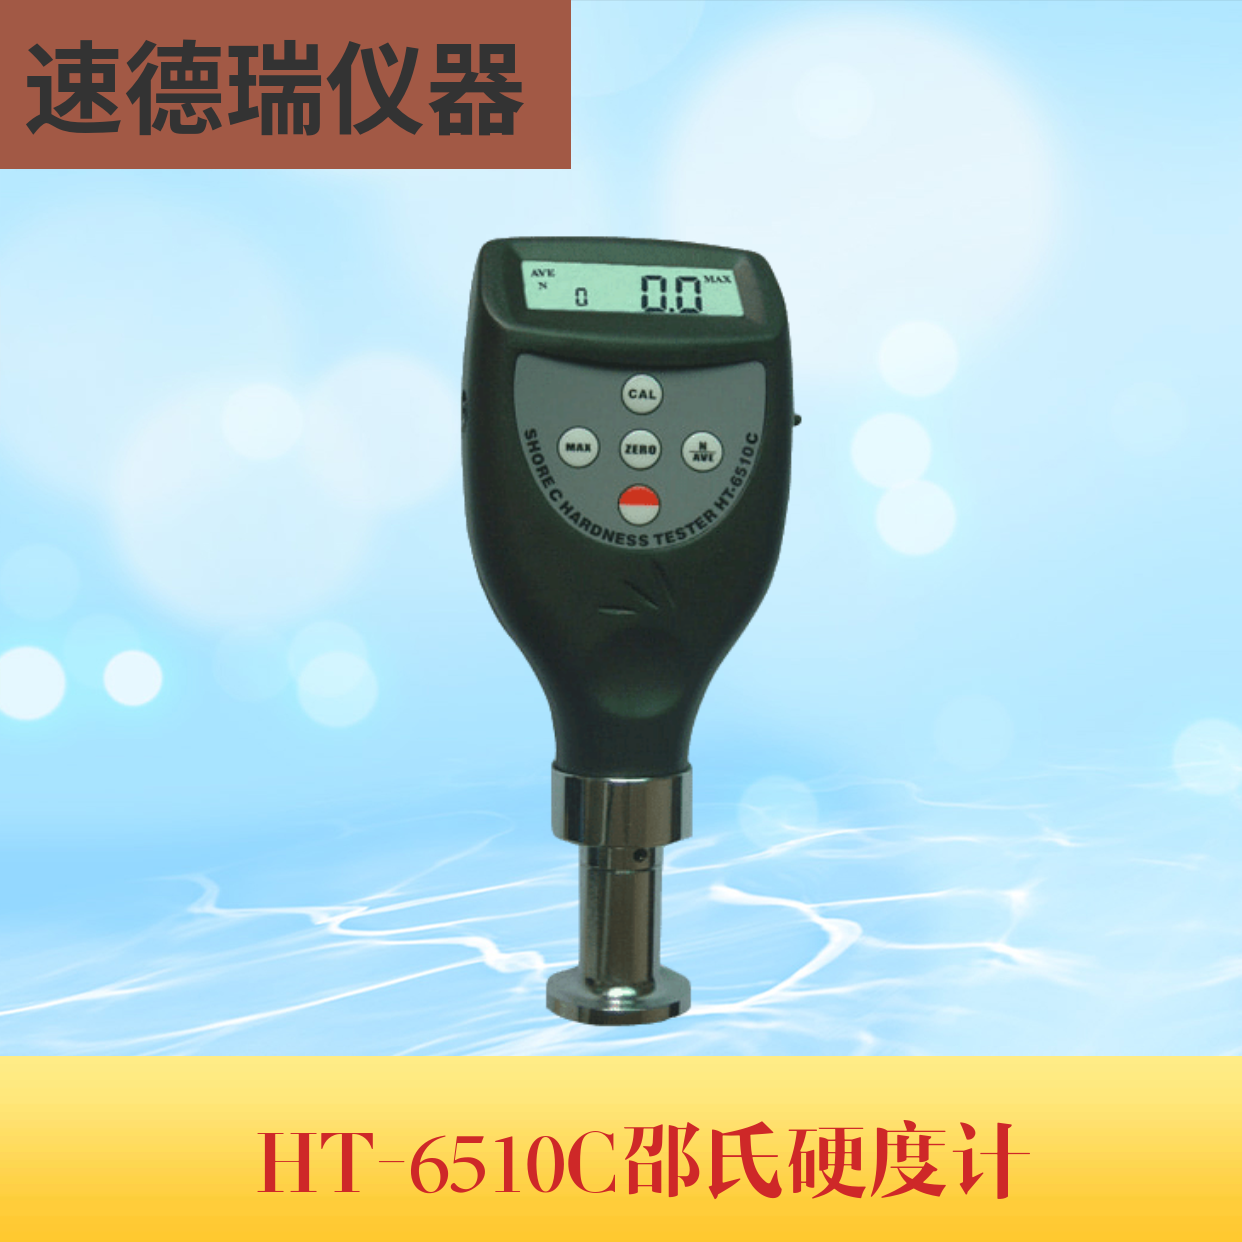 HT-6510C 邵式硬度計